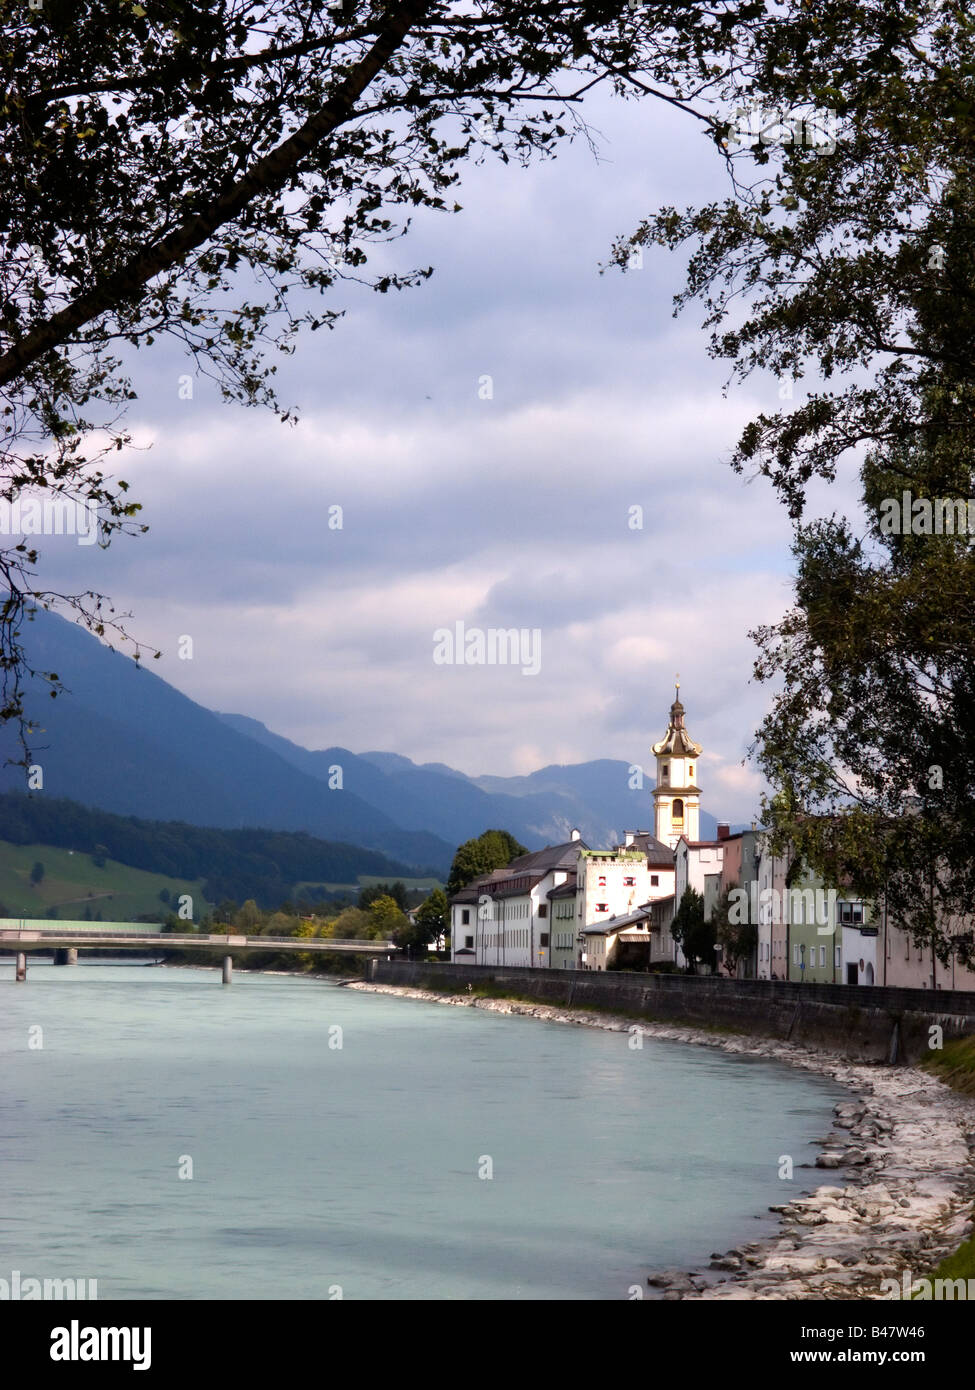 La ville historique de Rattenberg sur la rive de la rivière Inn Tyrol Autriche Banque D'Images